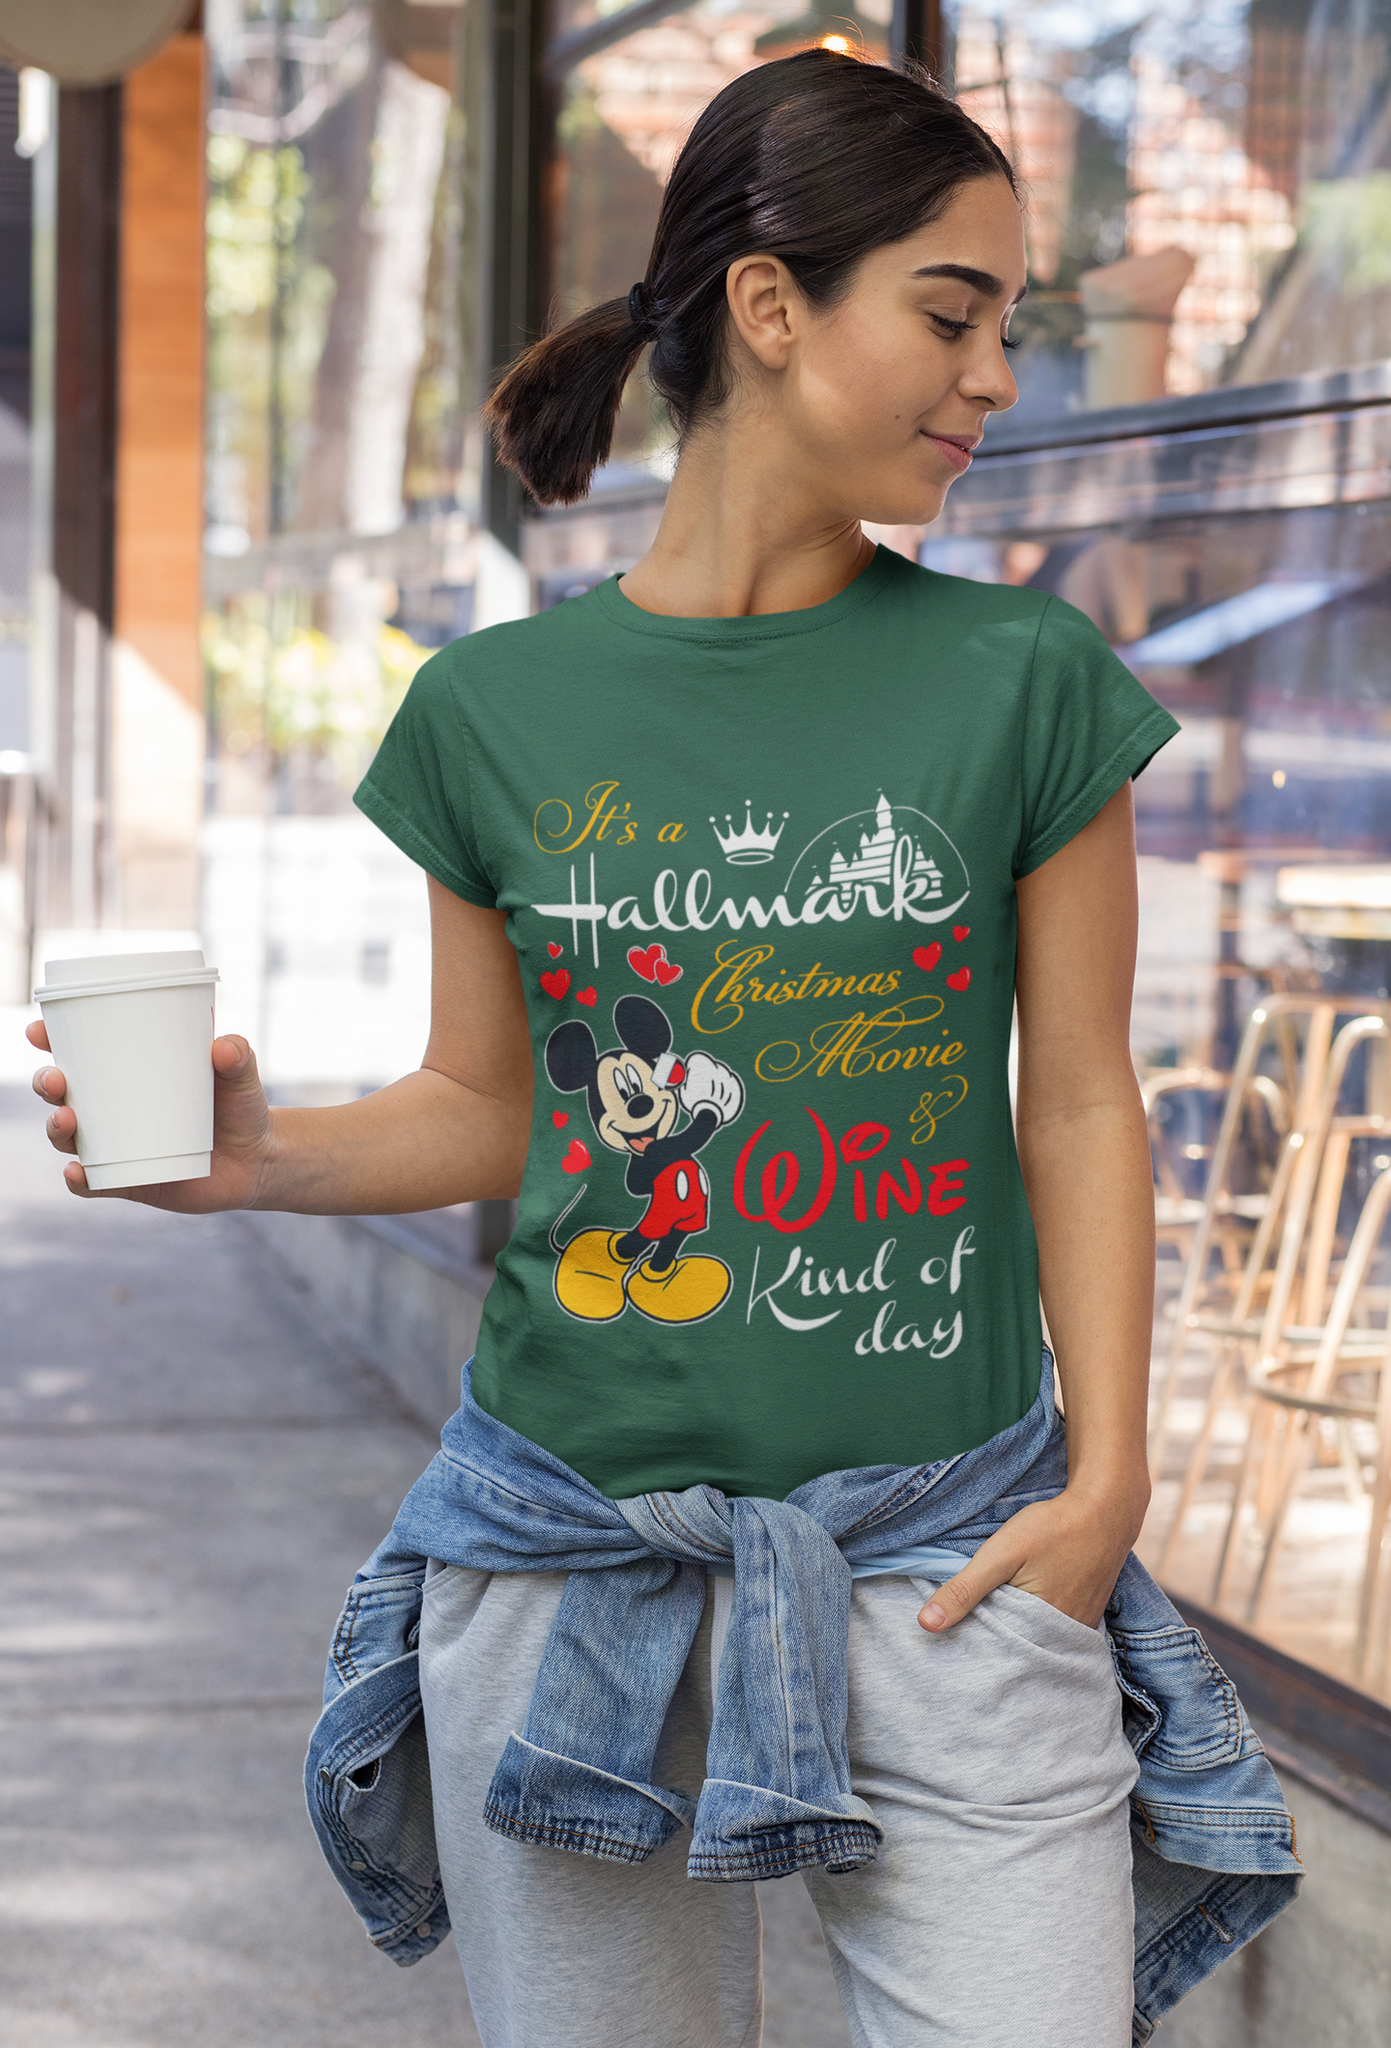 Hallmark Christmas T Shirt, Mickey Mouse T Shirt, Its A Hallmark Christmas Movie Shirt, Wine Kind Of Day Shirt, Christmas Gifts